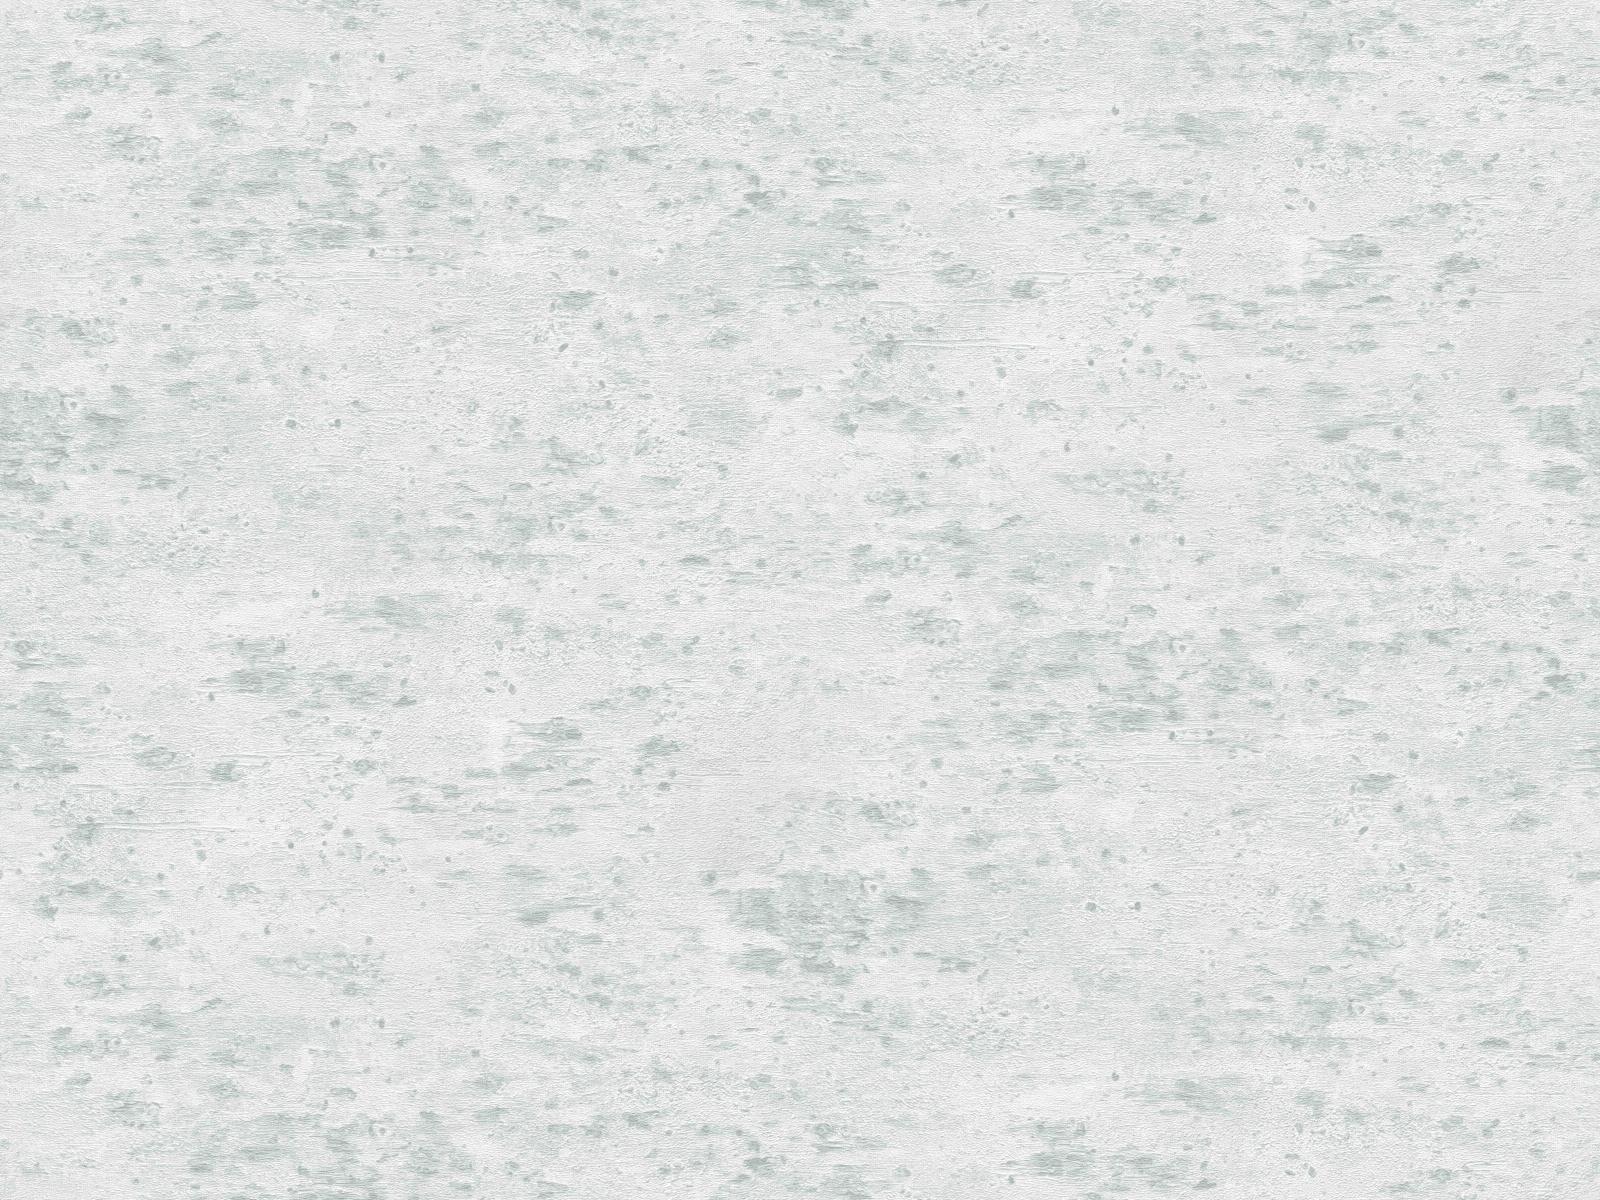 Vliesová tapeta imitujúca vulkanické horniny vo svetlo-šedej farbe, ER-601692